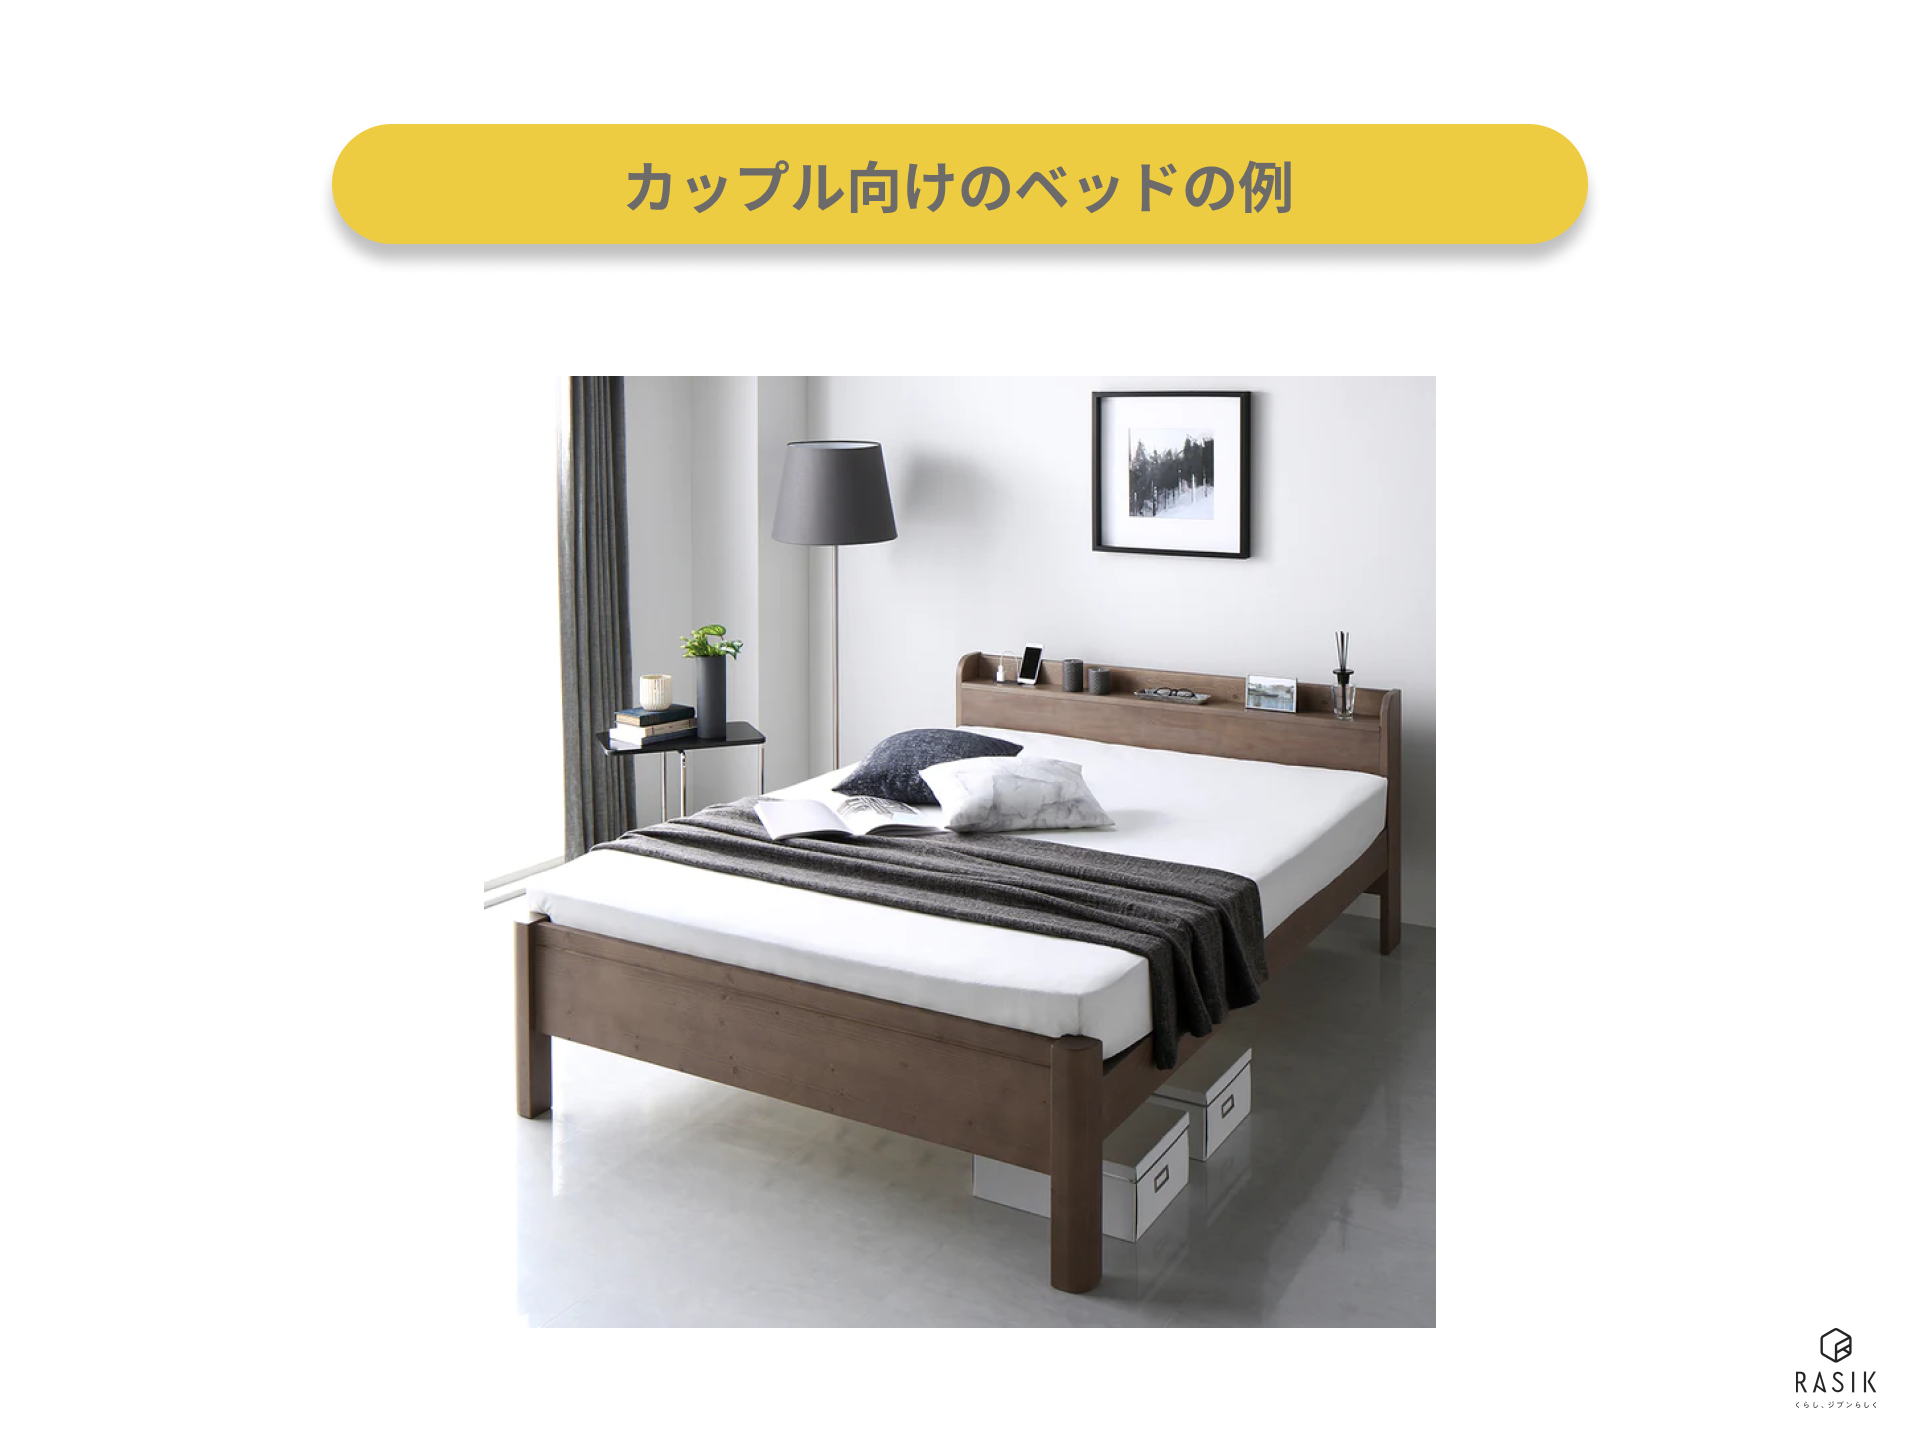 カップル向けのベッドの例